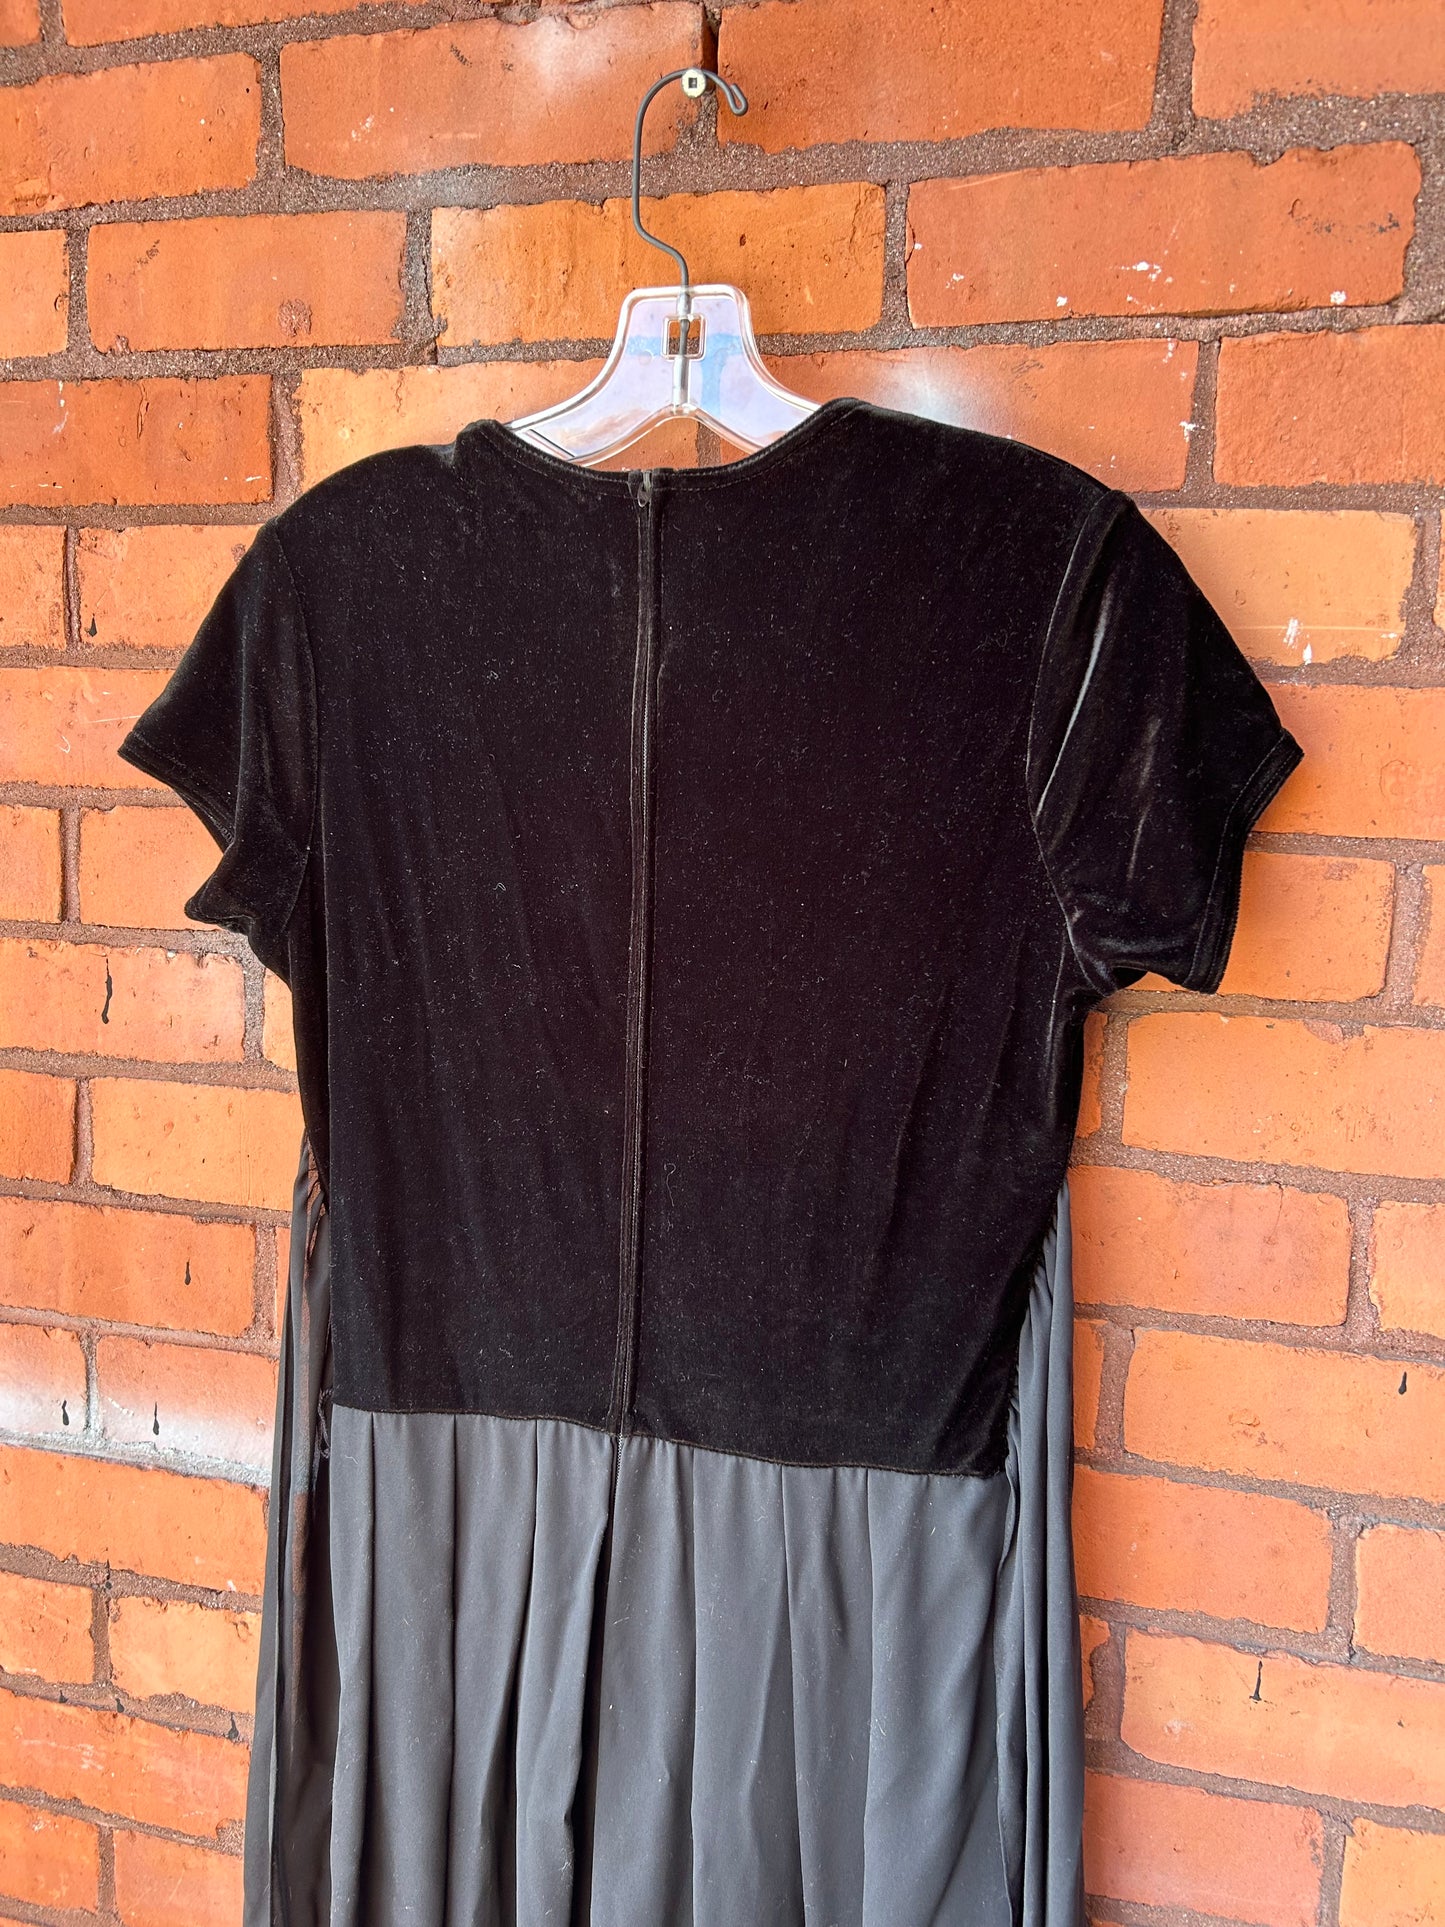 90’s Vintage Black Velvet Pleated Jumpsuit / Size 8-10